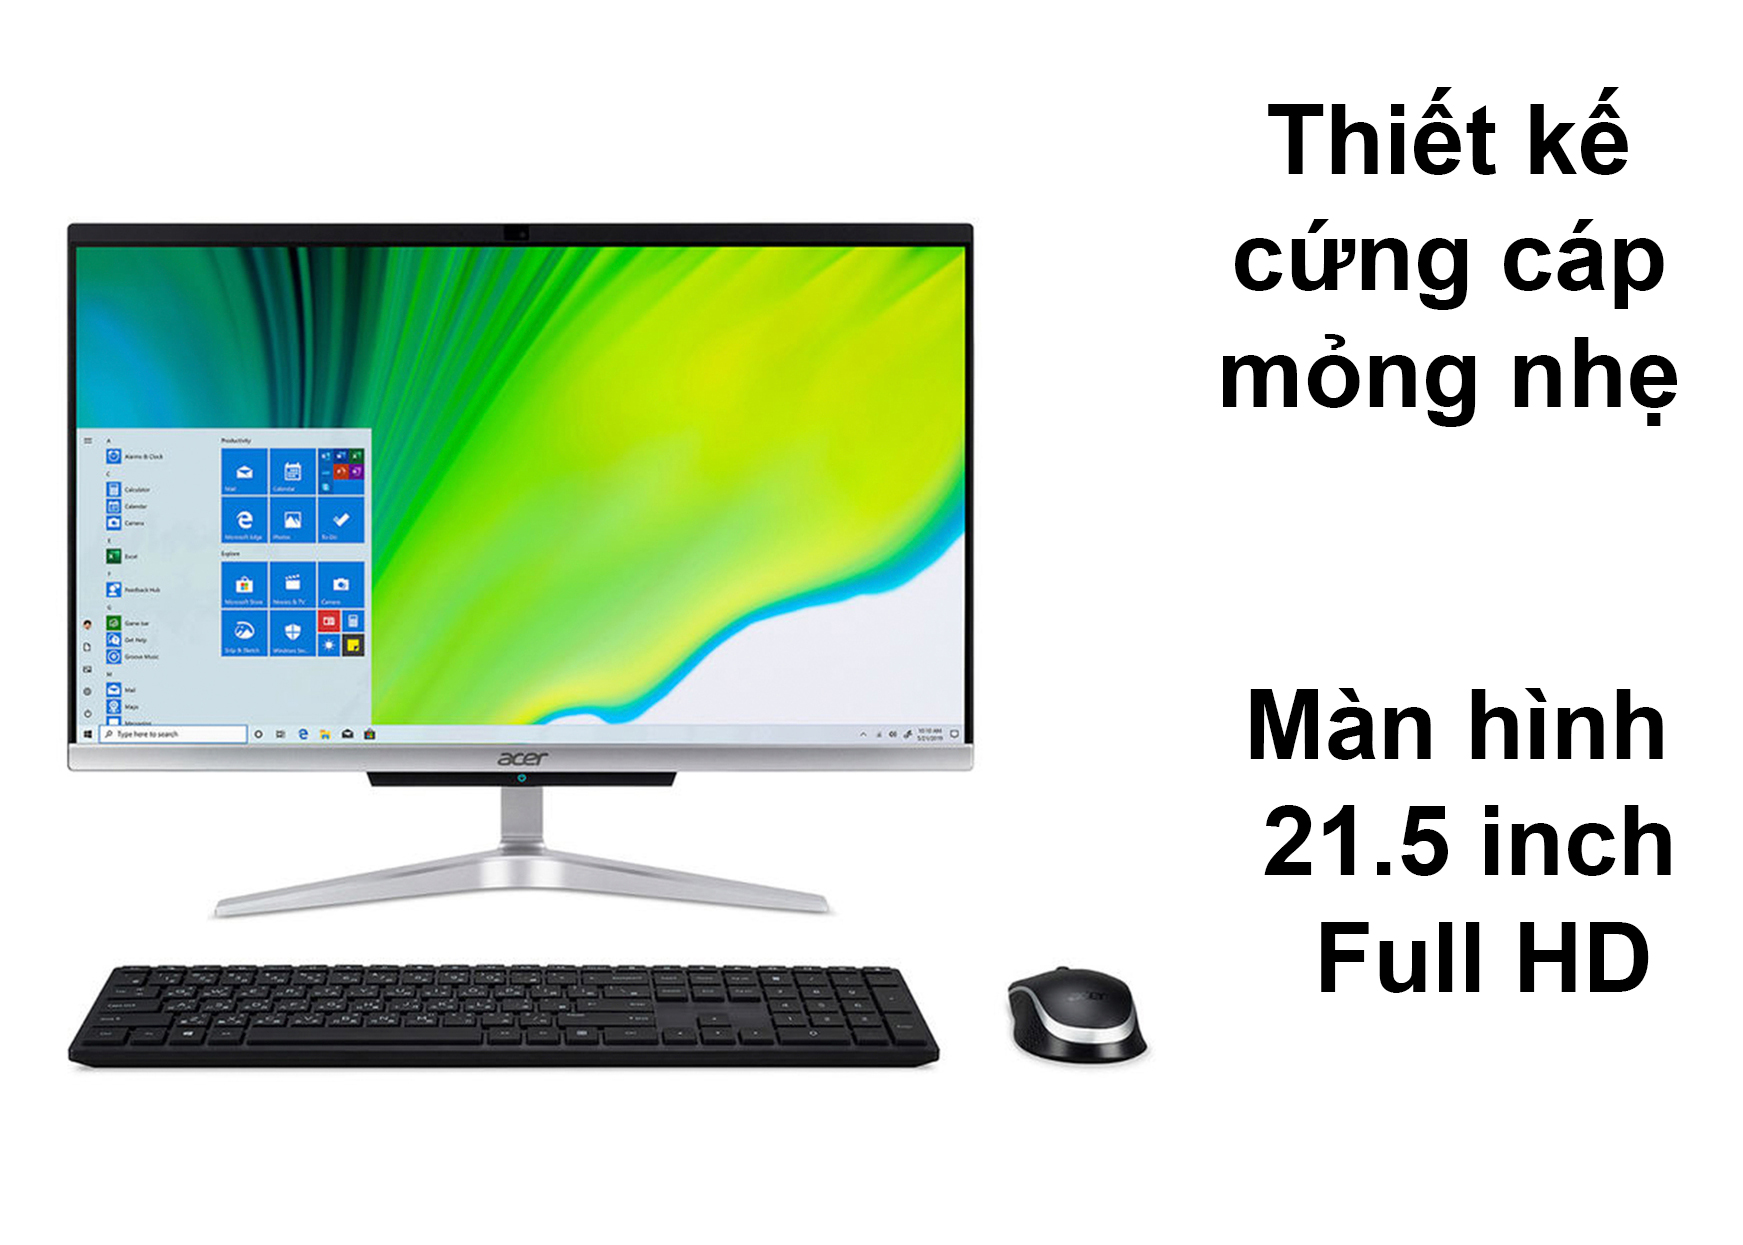 PC Acer AIO AS C22-963 | Thiết kế mỏng nhẹ, cứng cáp | Màn hình 21.5 inch Full HD